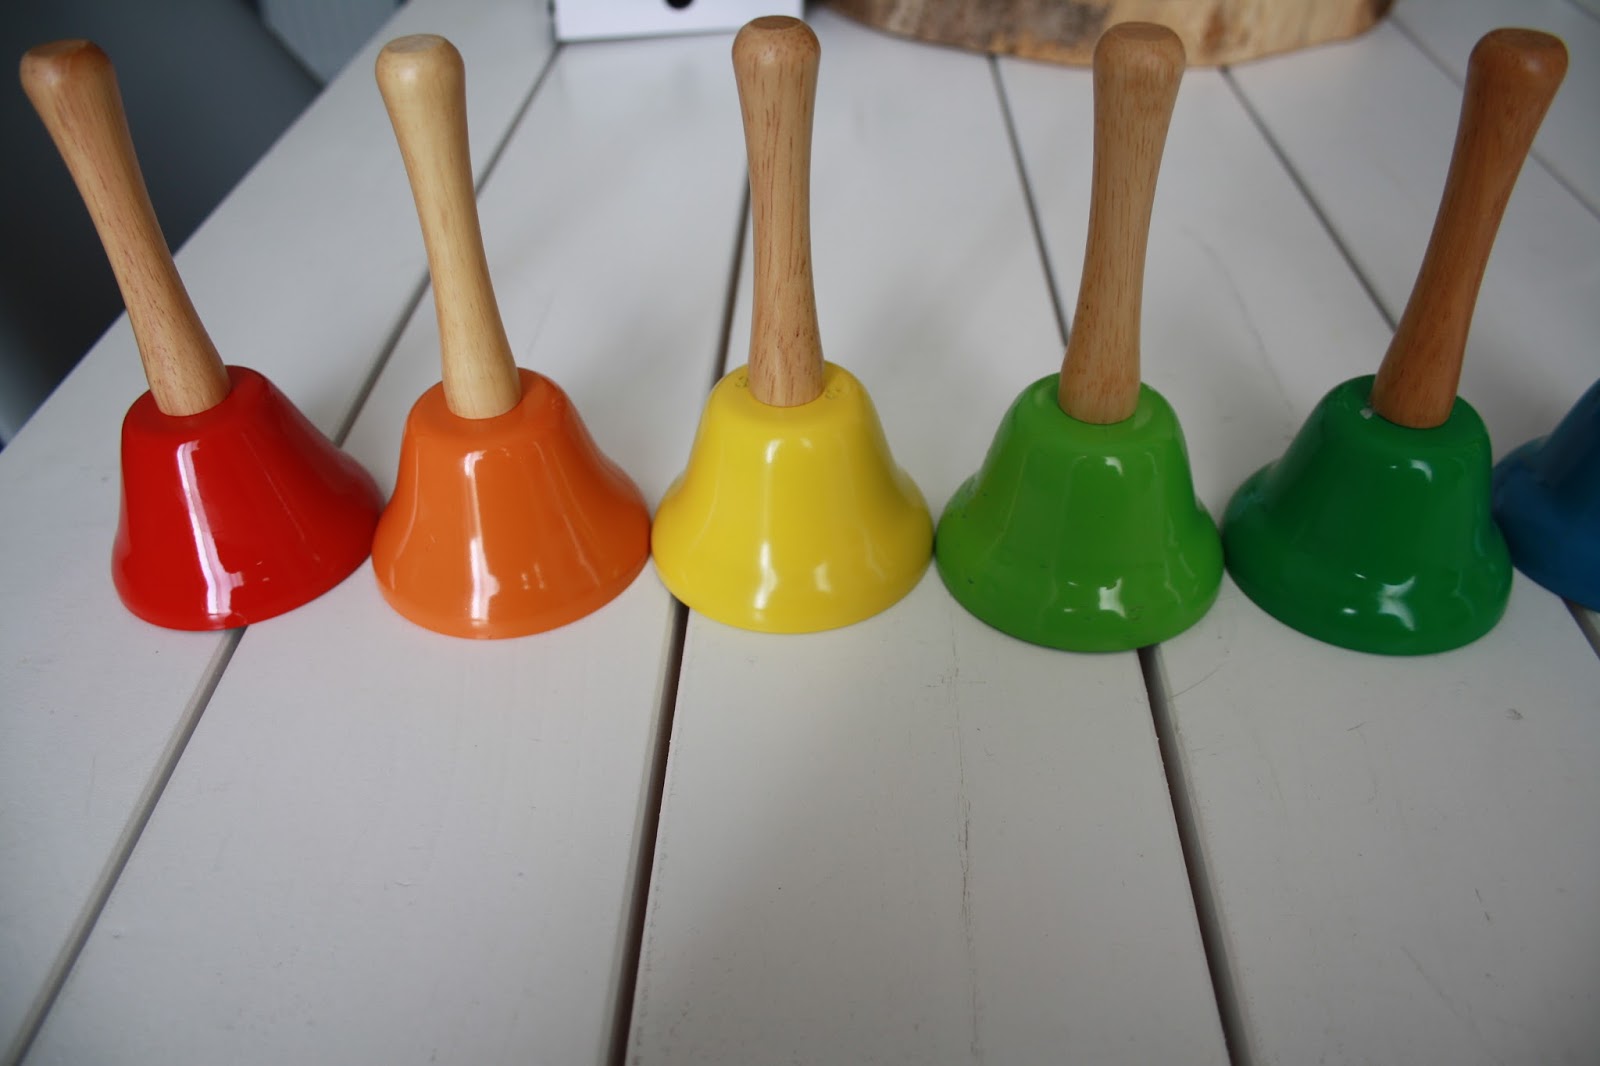 Instrument de musique - Les cloches musicales activité Montessori